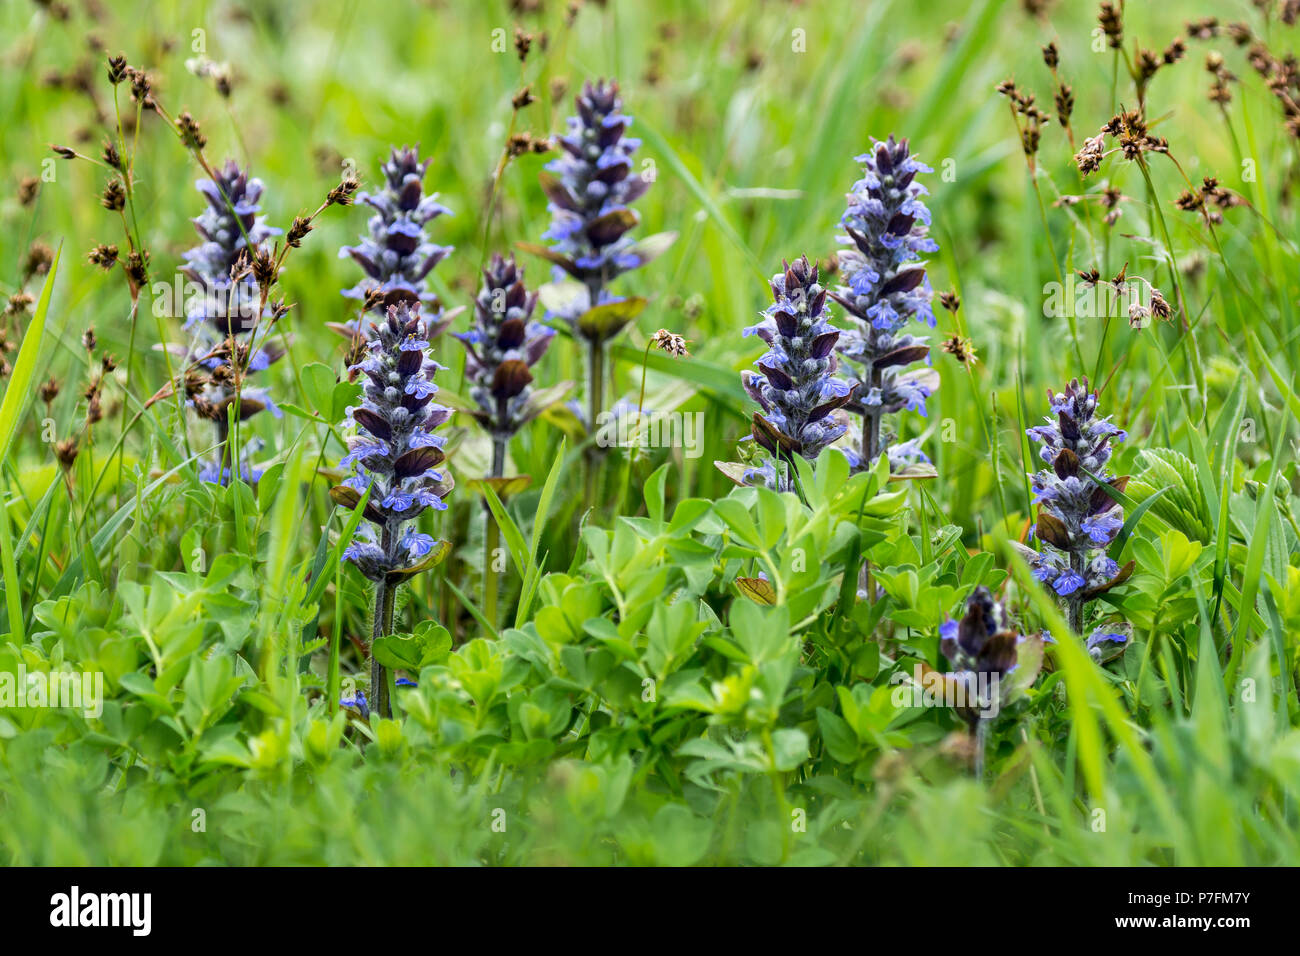 Blue bugles (Ajuga reptans) in a meadow, Burgenland, Austria Stock Photo